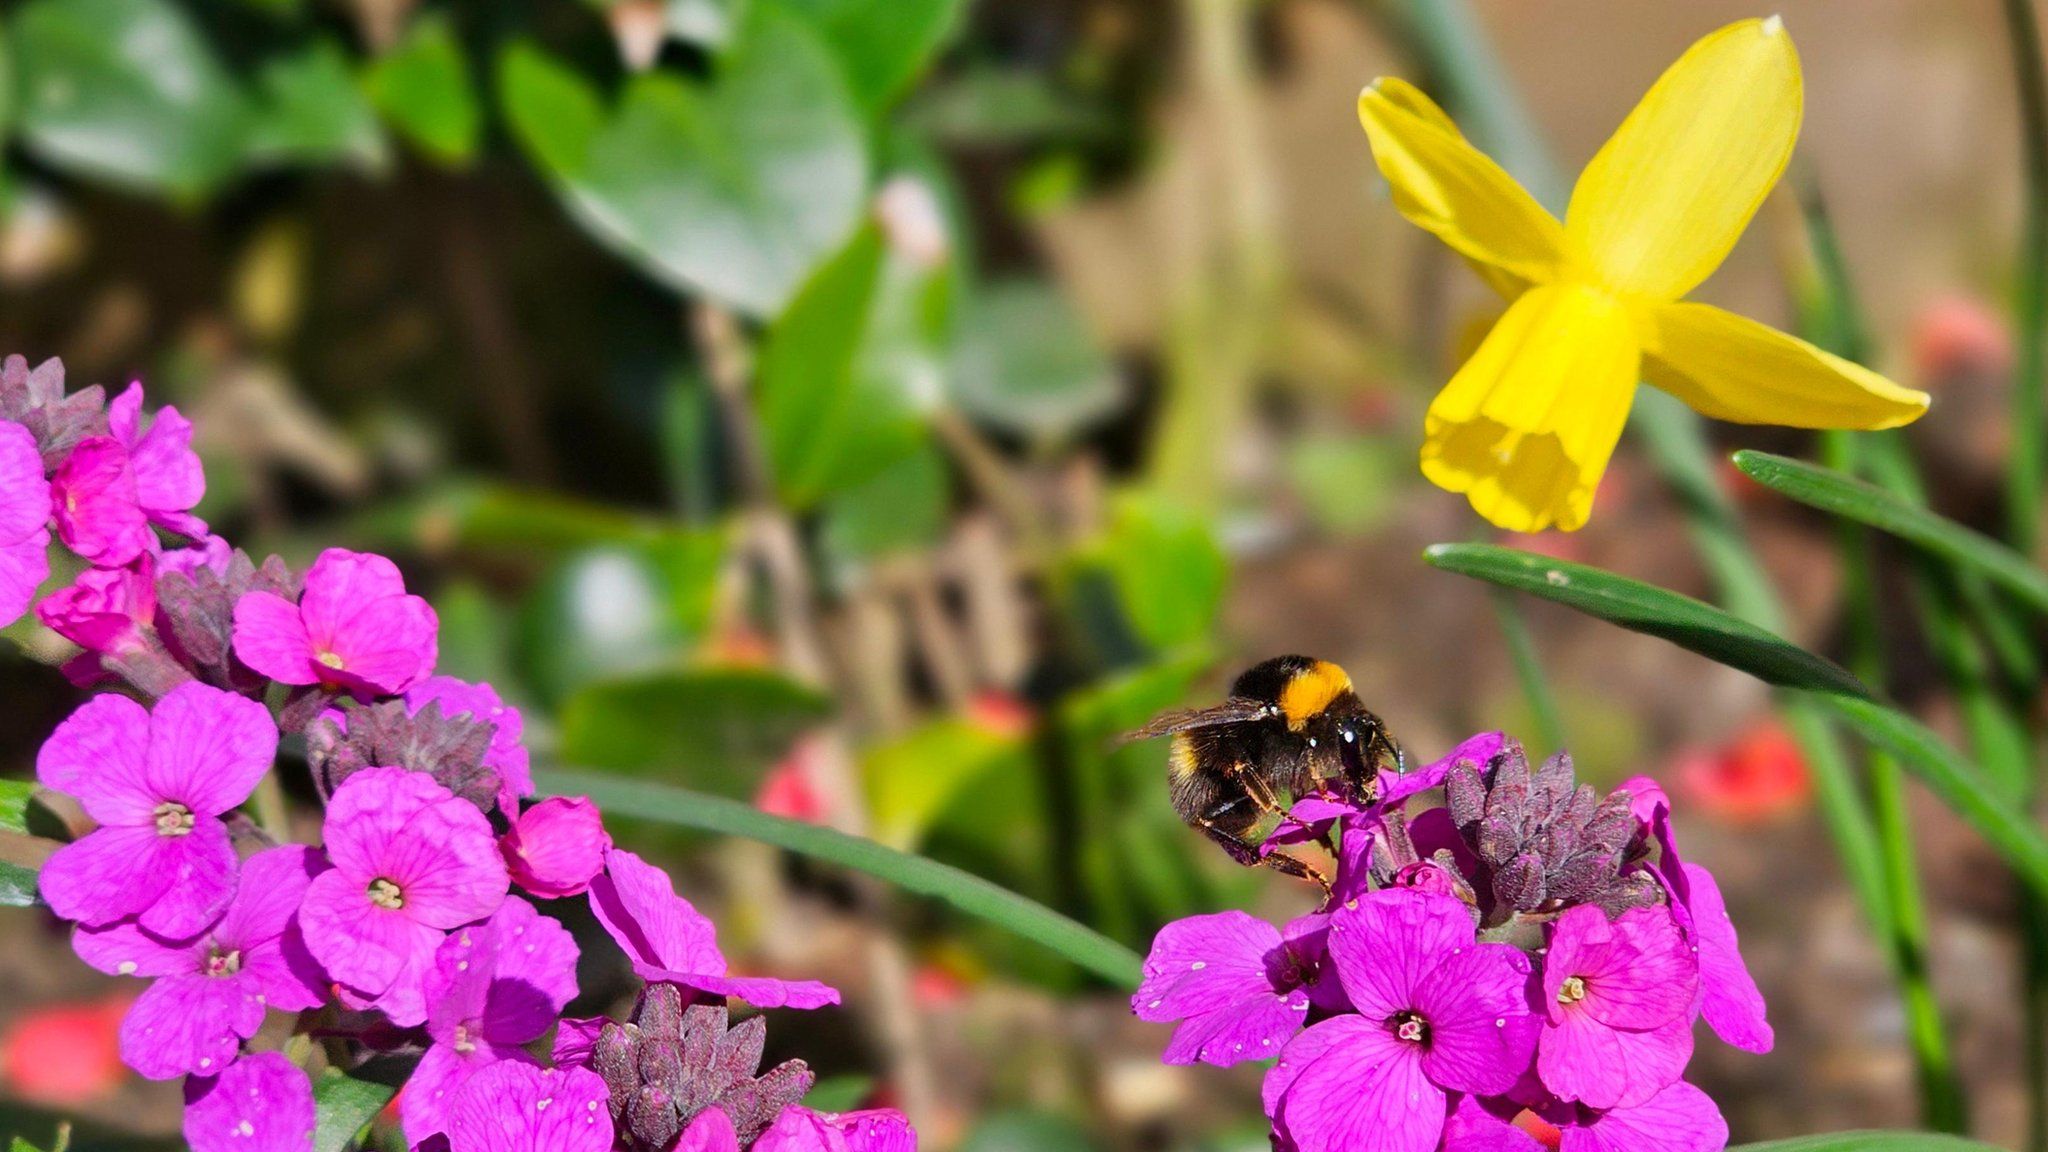 Bee on a flower in Wallsend